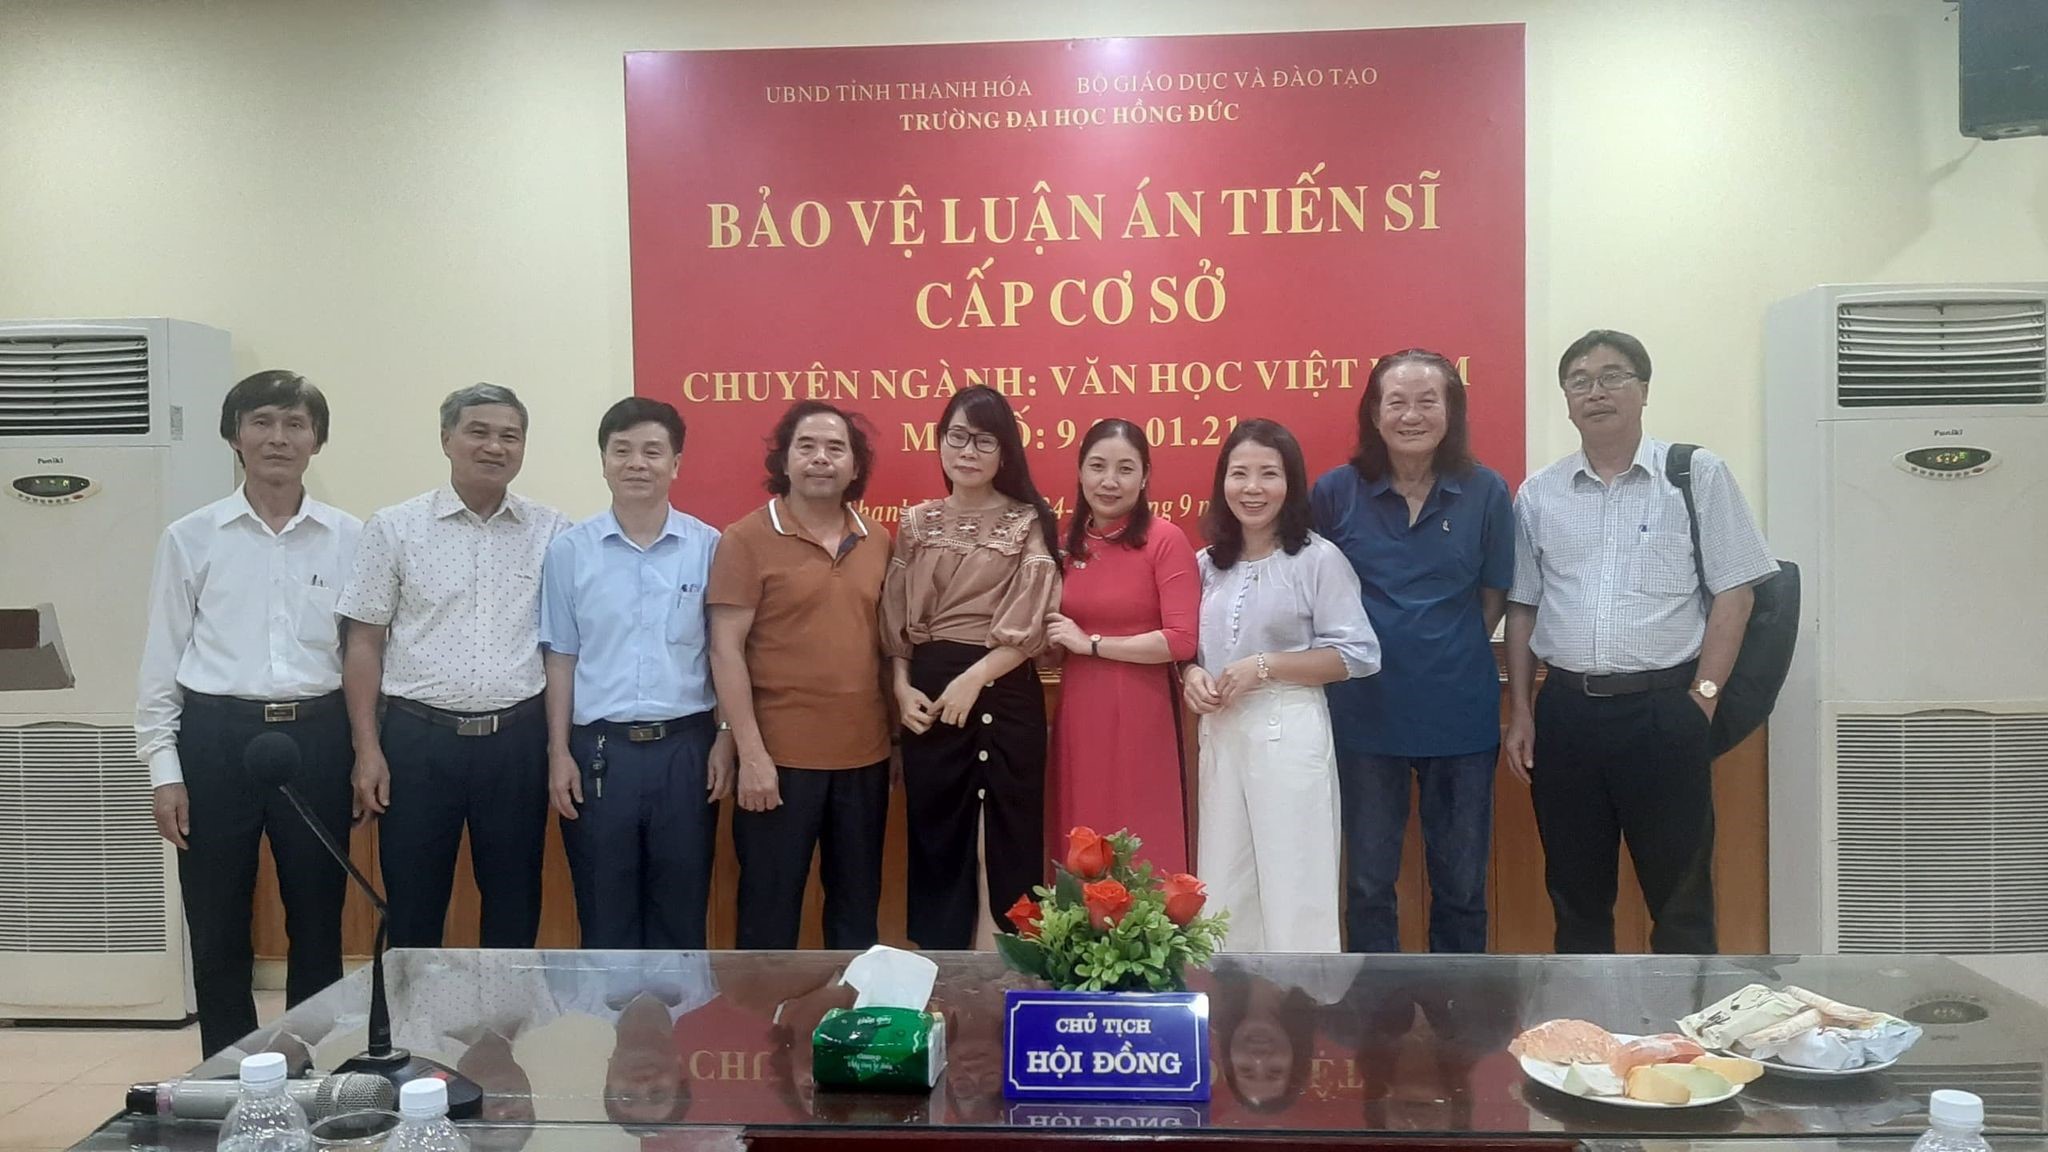 Ba nghiên cứu sinh chuyên ngành Văn học Việt Nam bảo vệ thành công luận án tiến sĩ cấp cơ sở